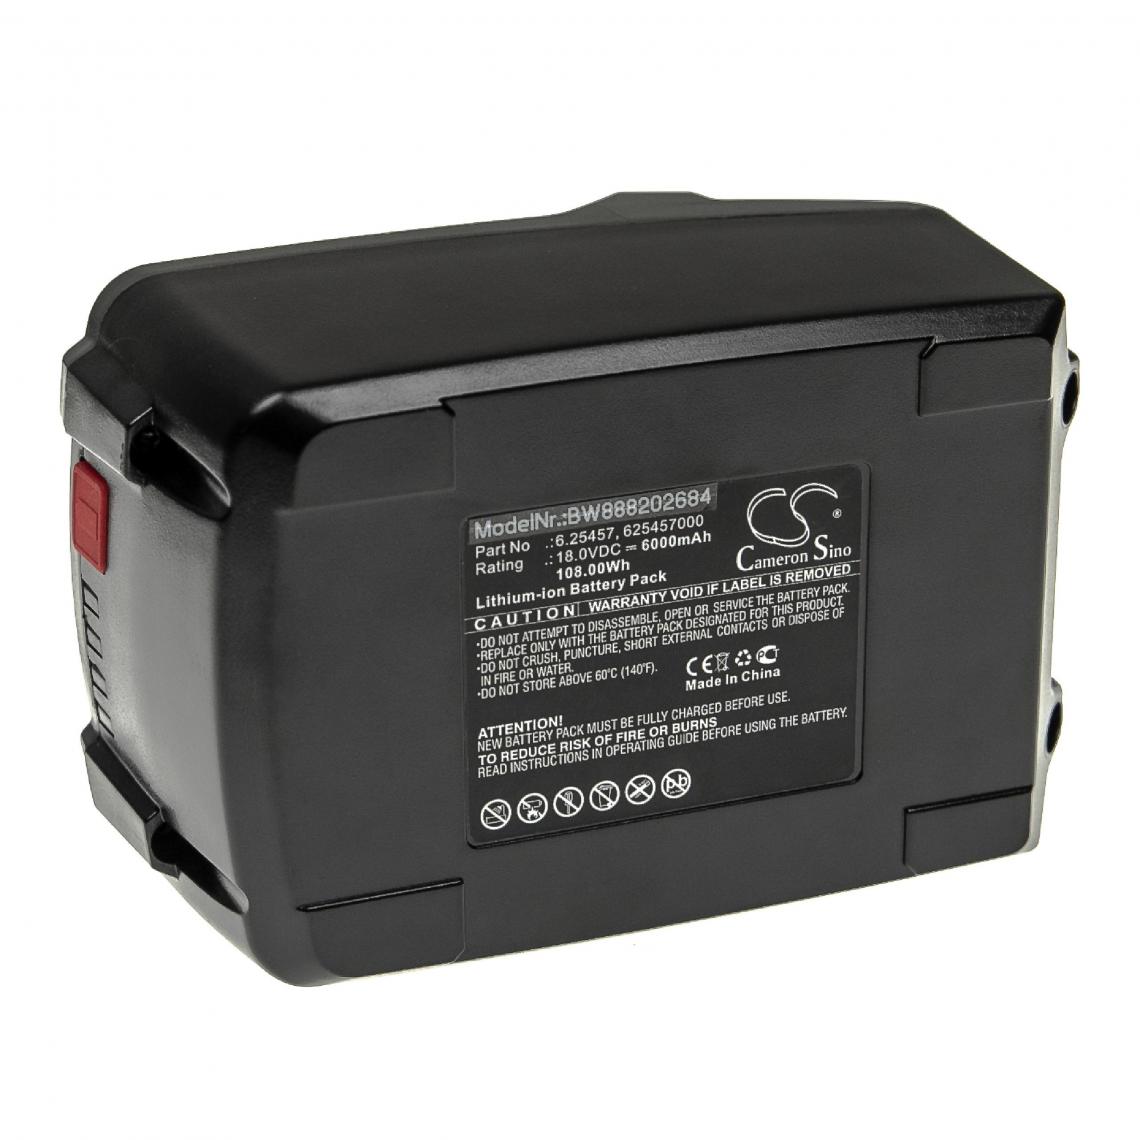 Vhbw - vhbw Batterie compatible avec Metabo SB 18 LTX BL Q I, SB 18 LTX Impuls, SB 18 LTX Quick outil électrique (6000mAh Li-ion 18 V) - Autre appareil de mesure